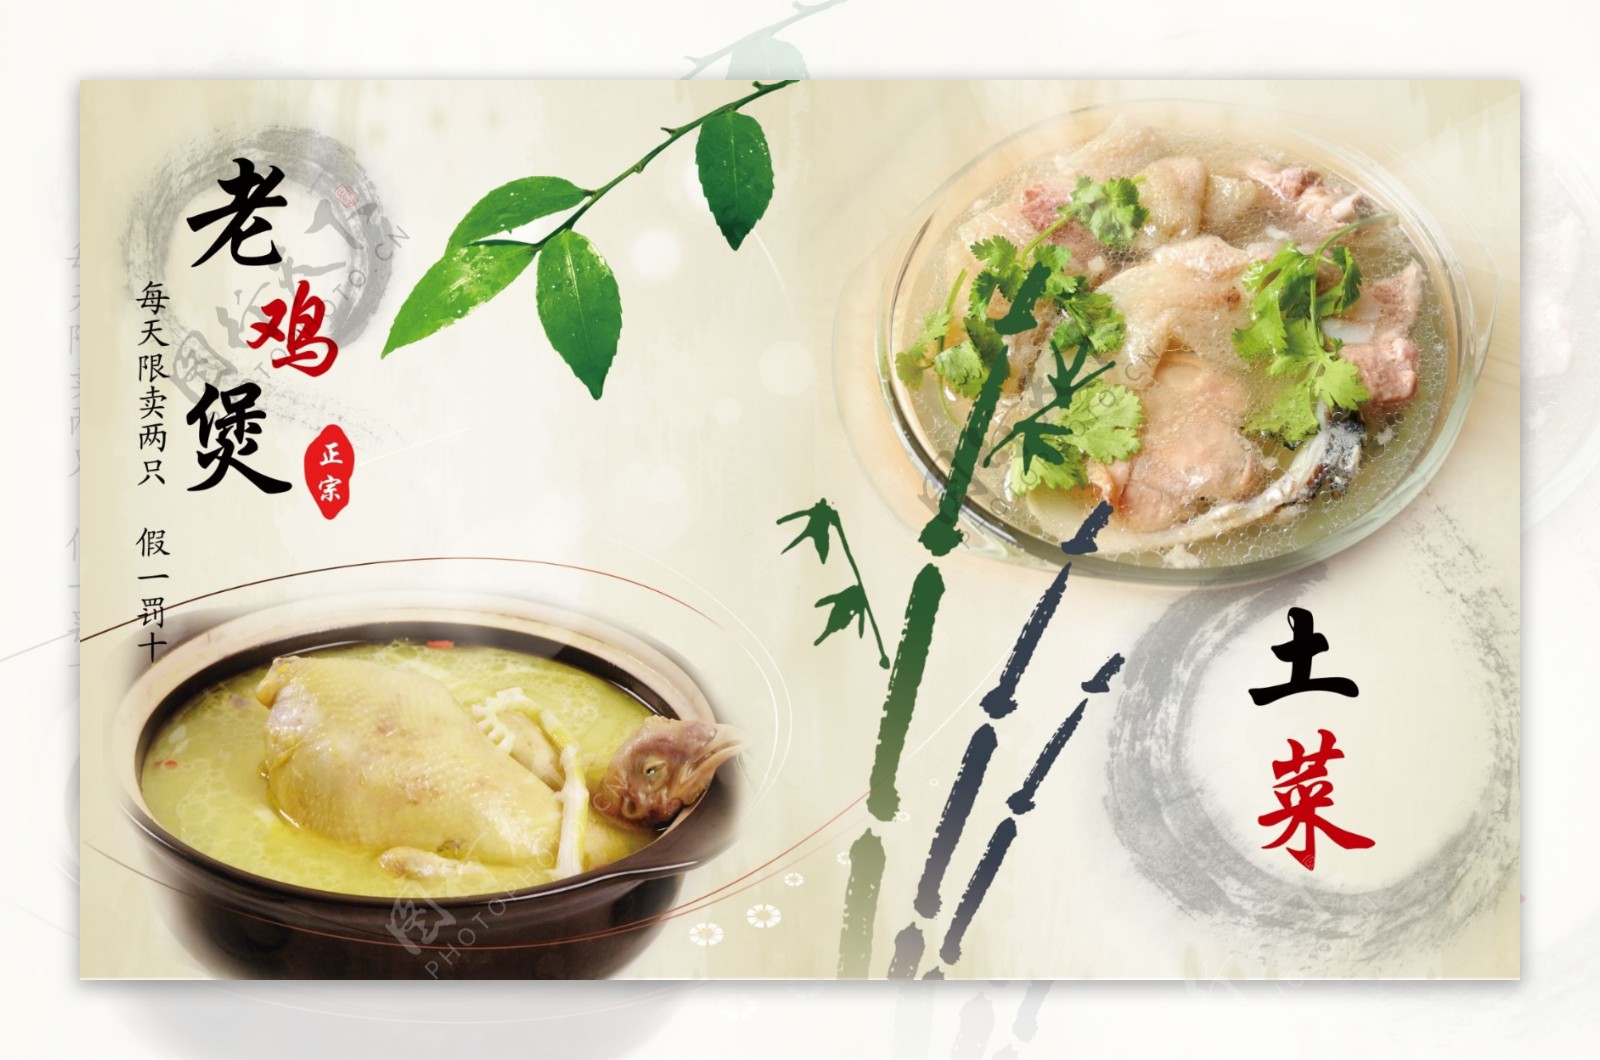 中国风菜谱老鸡煲土菜图片